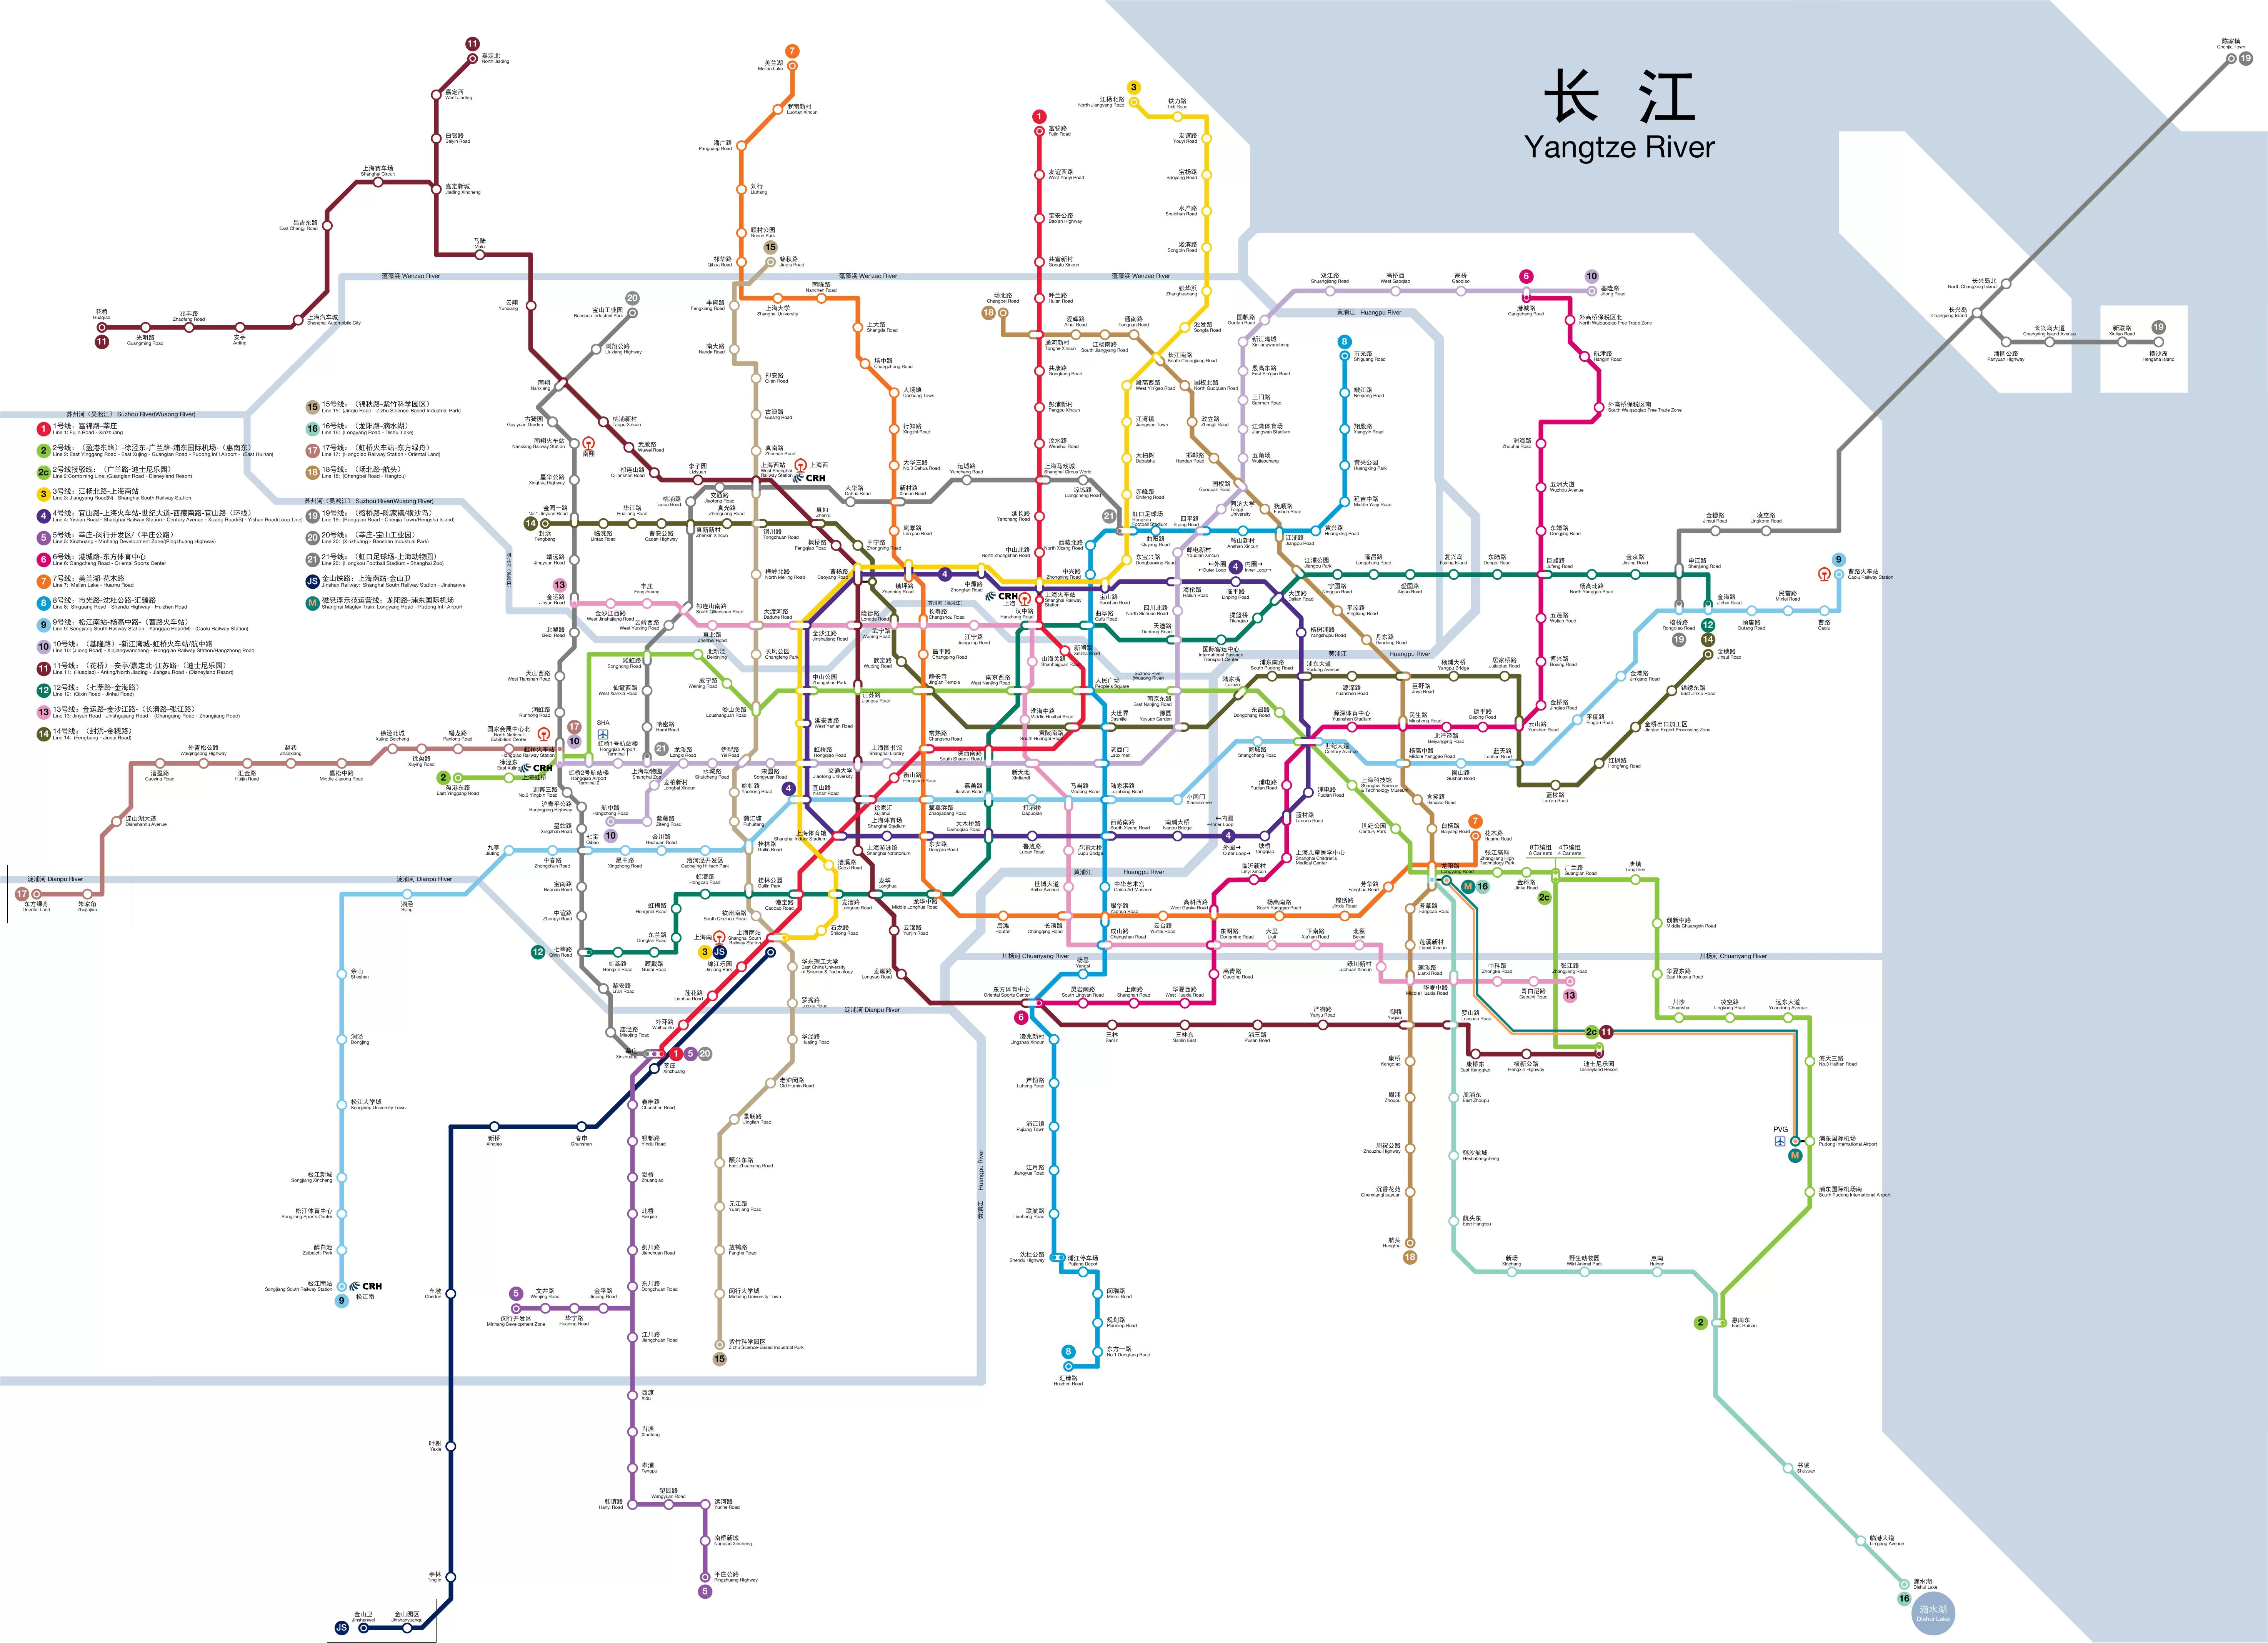 上海地铁线路图